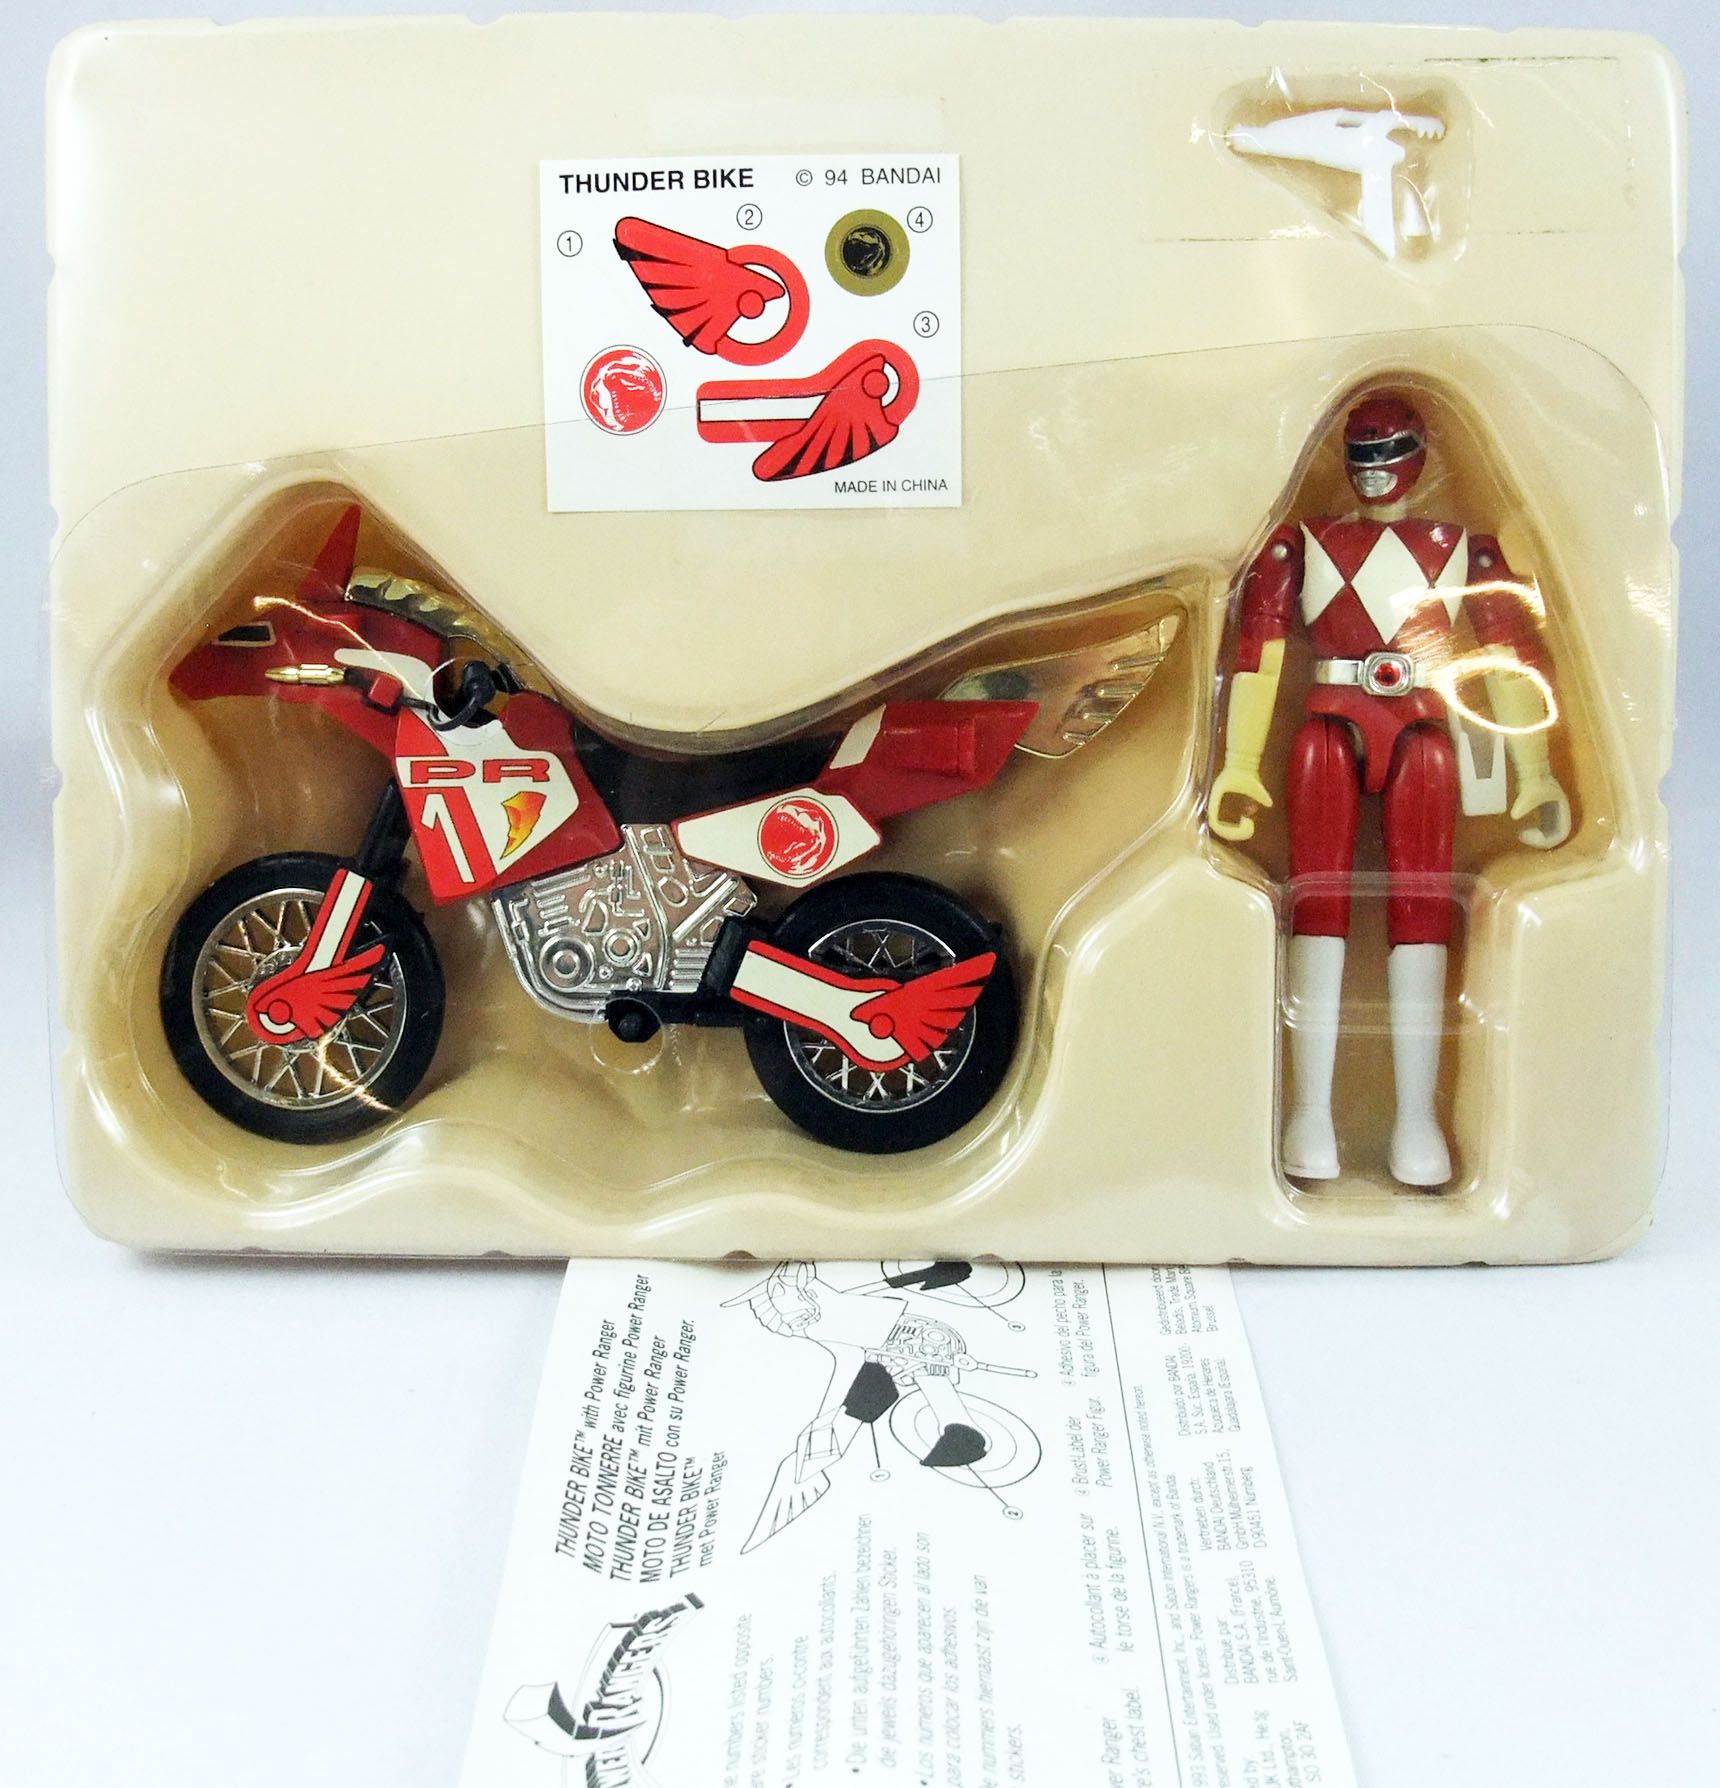 Mighty Morphin Power Ranger Thunder Bike Red Ranger Mint In Box